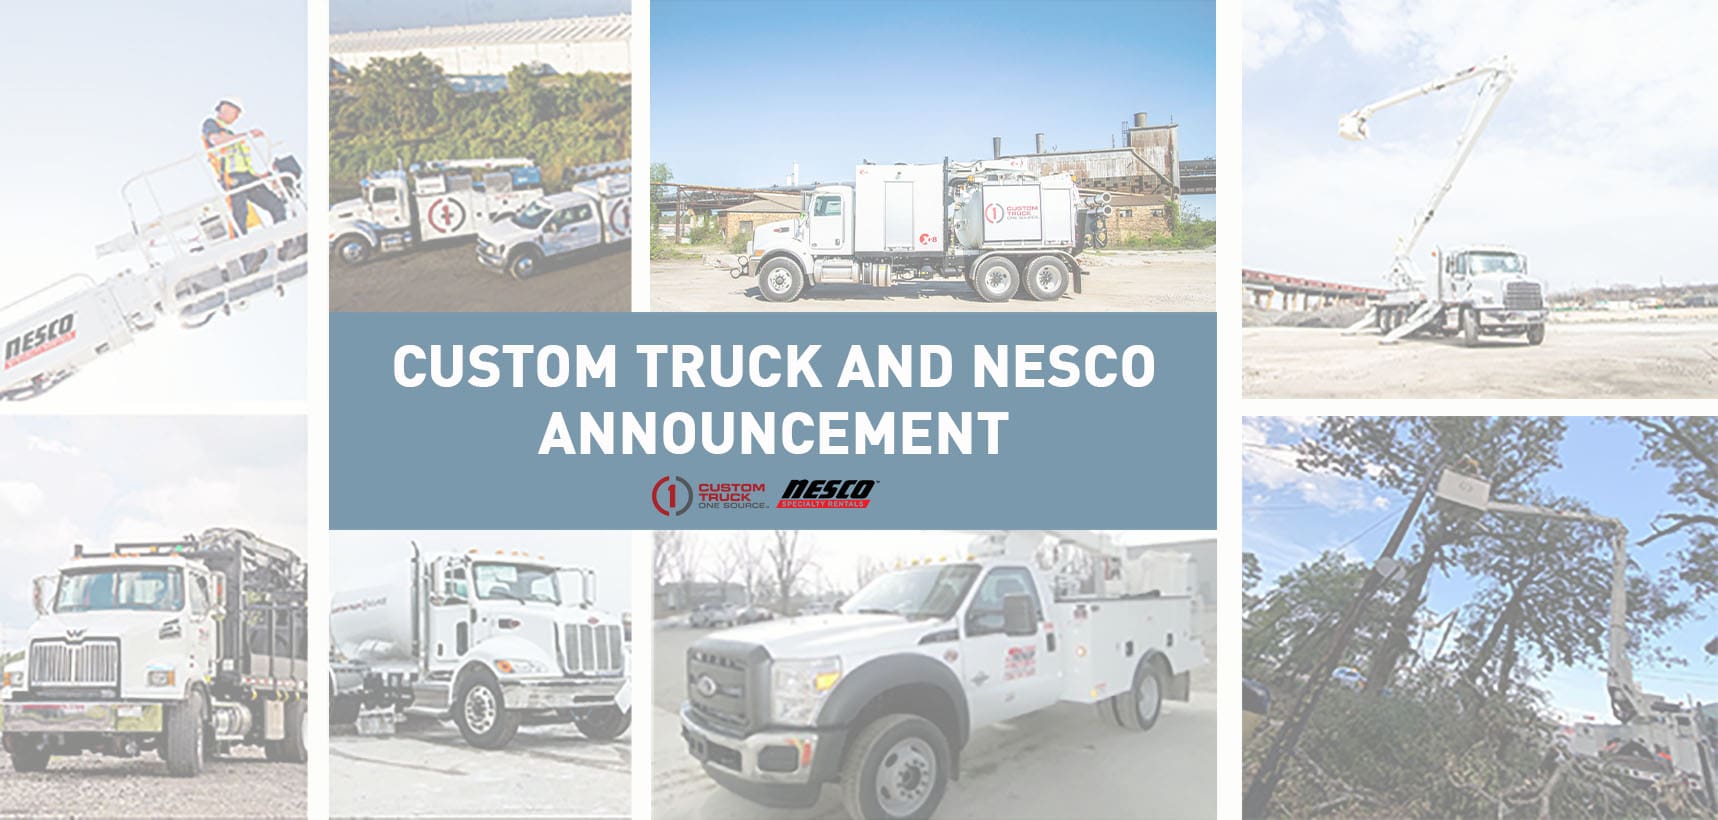 Custom Truck Nesco Announcement Slider Image